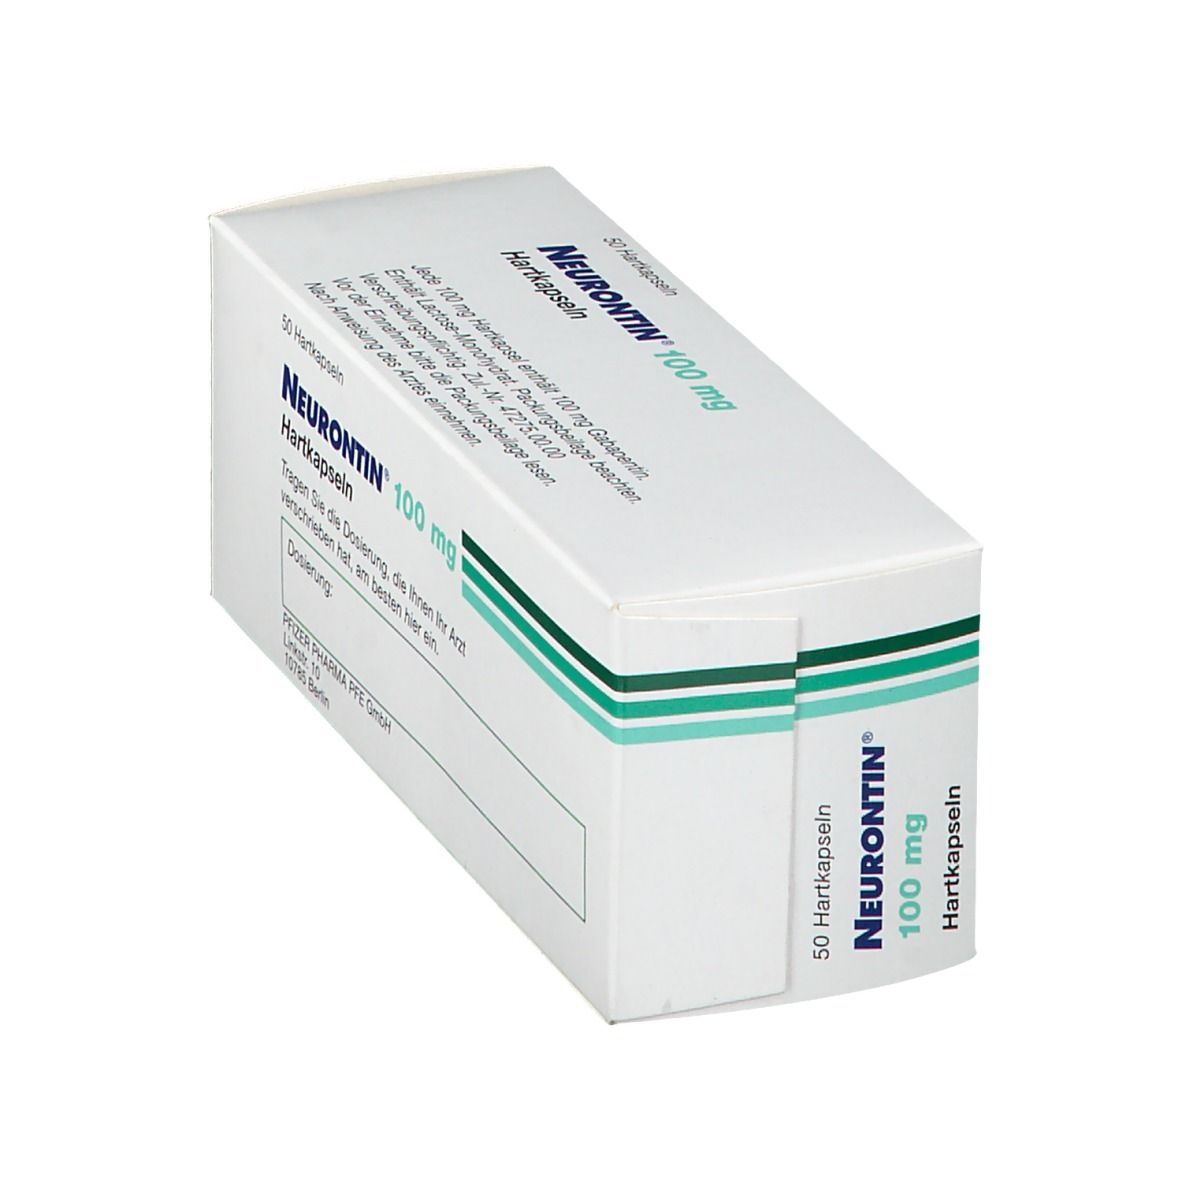 Neurontin® 100 mg